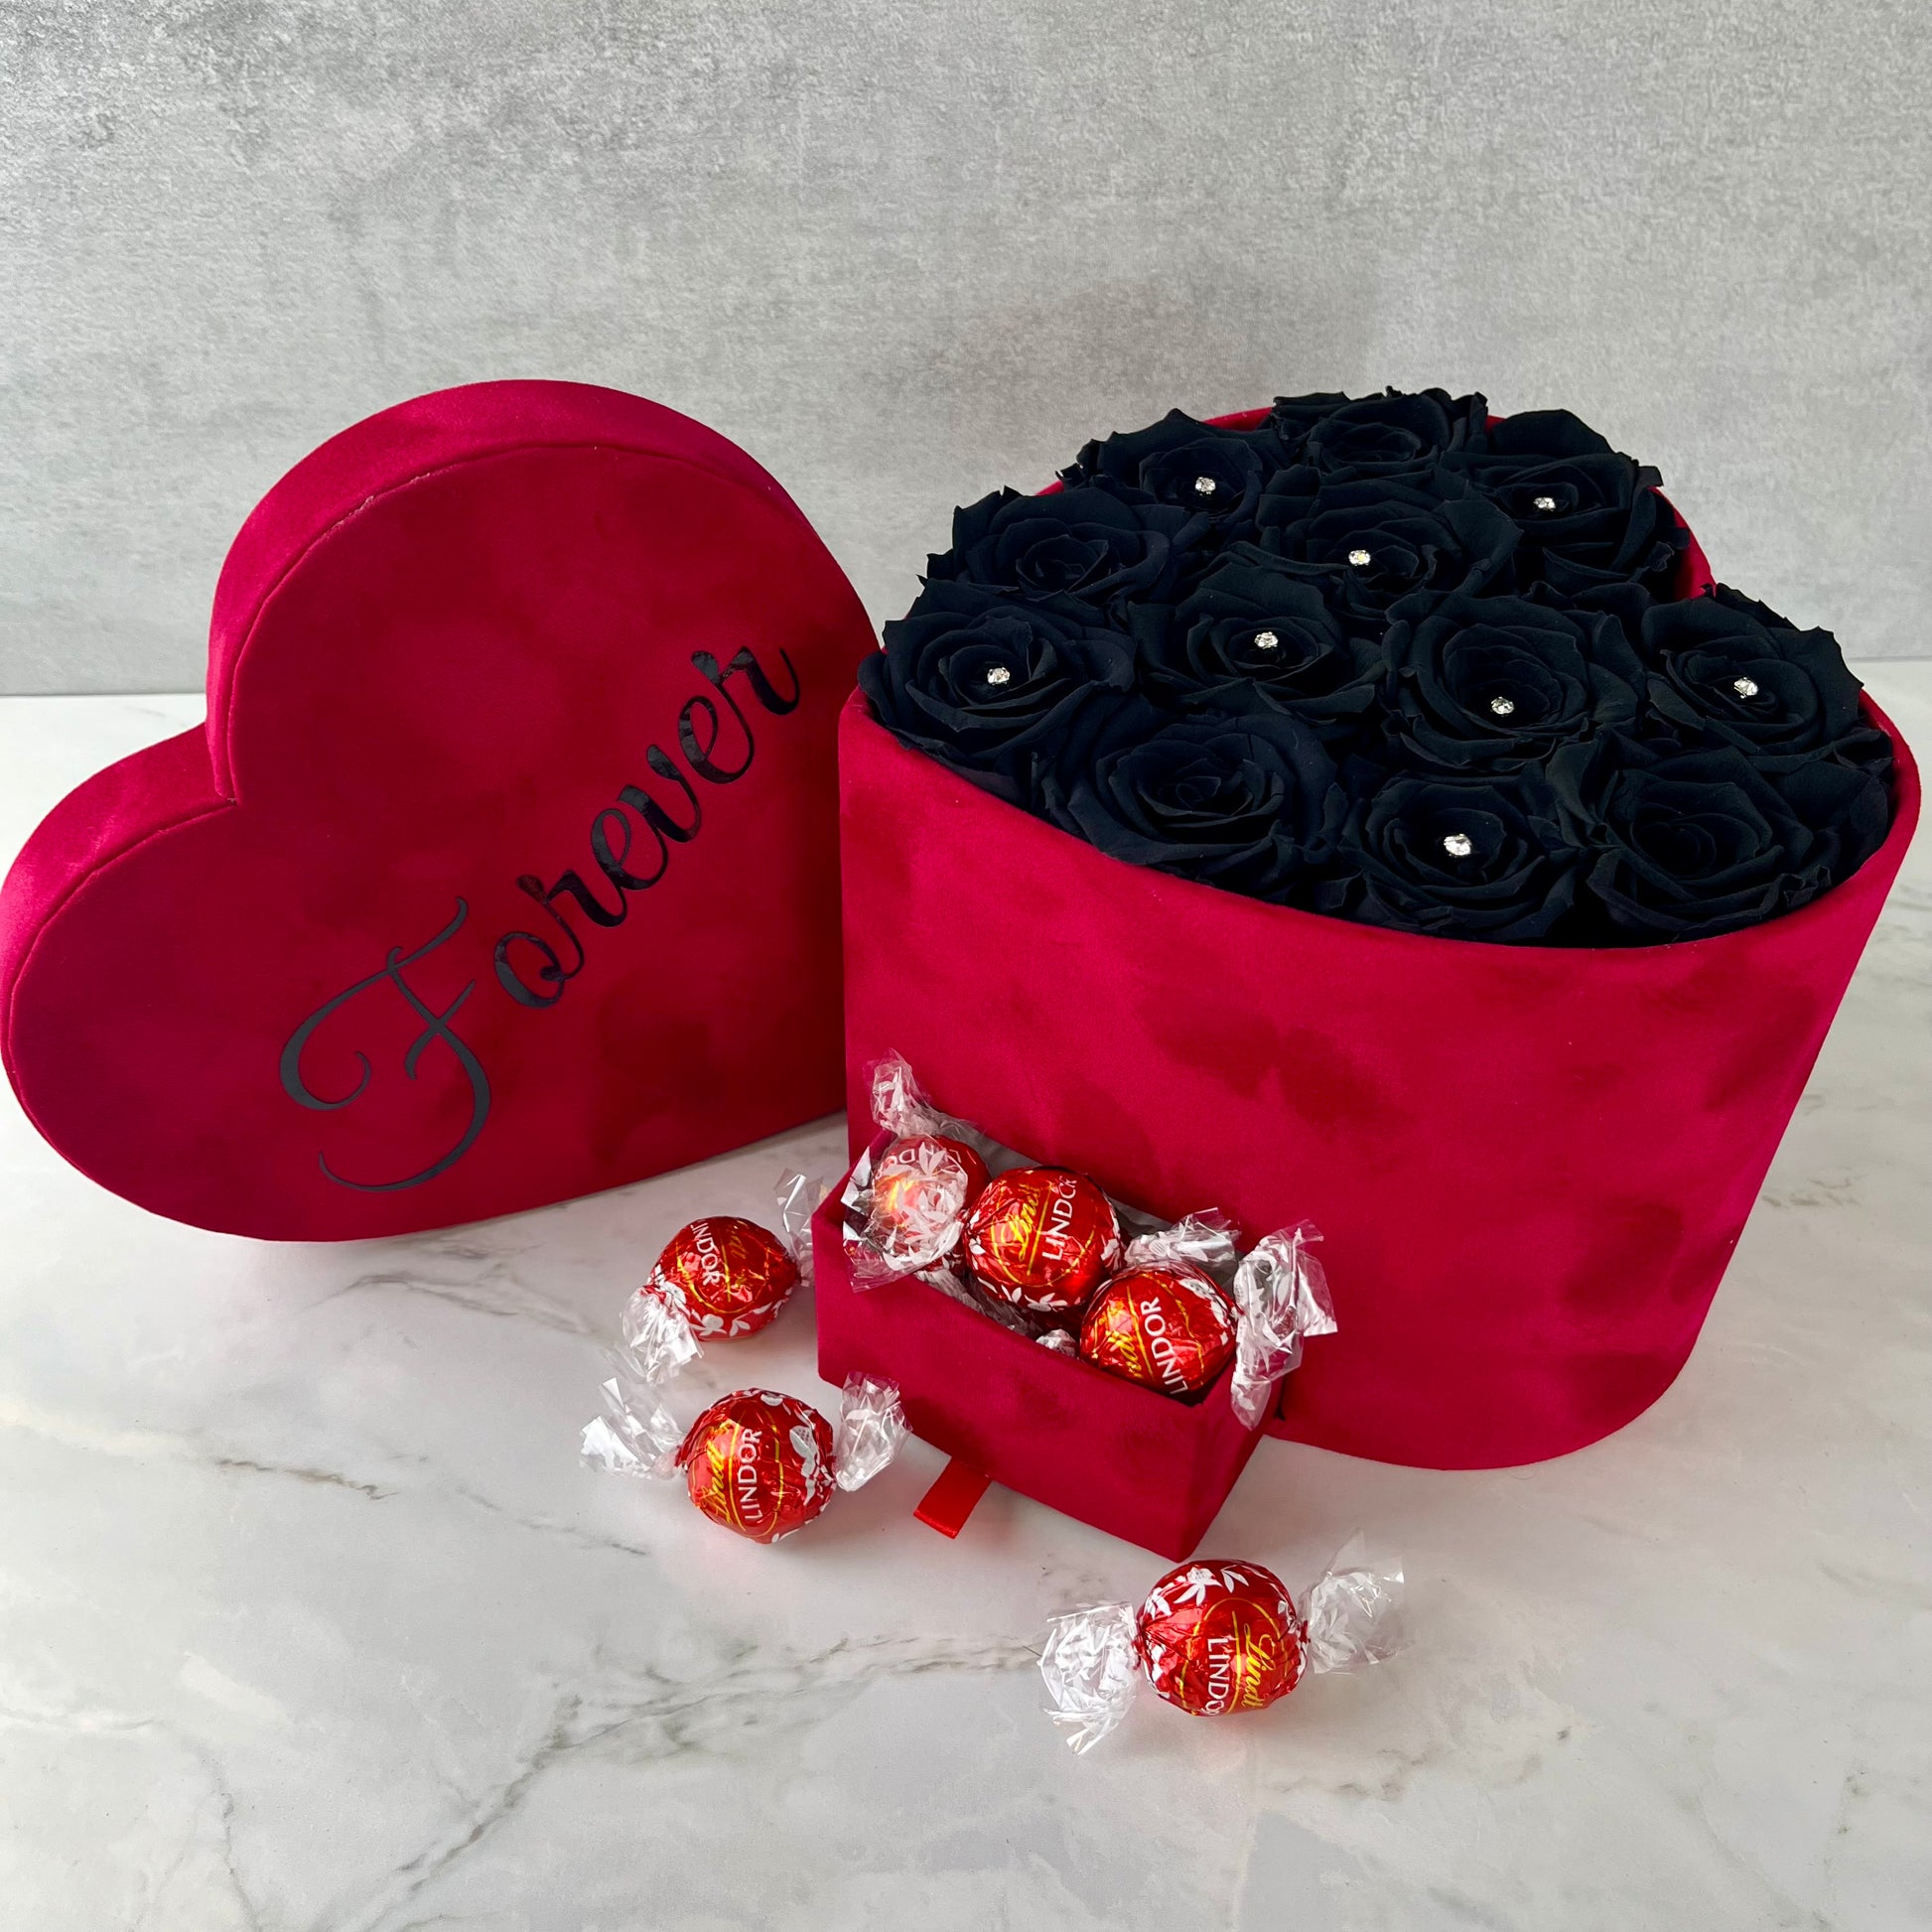 Red Velvet Heart Infinity Rose Box - Black Eternal Roses - Personalised Rose Box - Rose Colours divider-Ruby Red